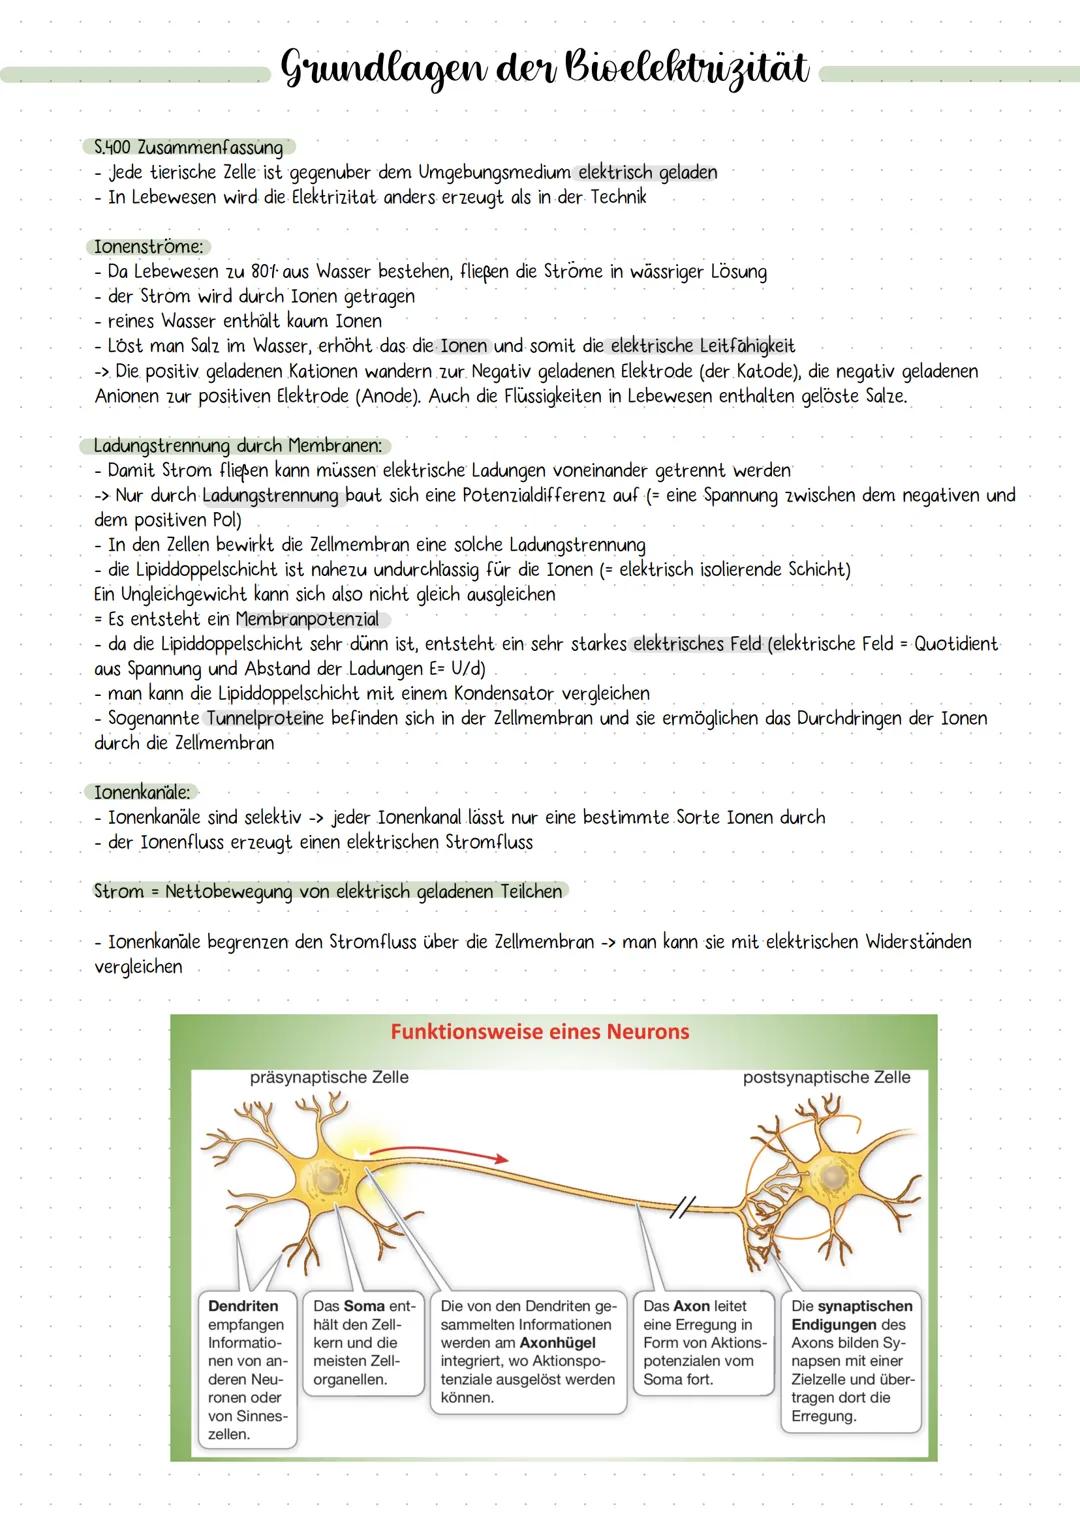 DIE NERVENZELLE
AUFBAU UND FUNKTION Bau einer Nervenzelle:
Nervenzellen (Neuronen) sind
die Informations-
übertragenden und
informationsvera